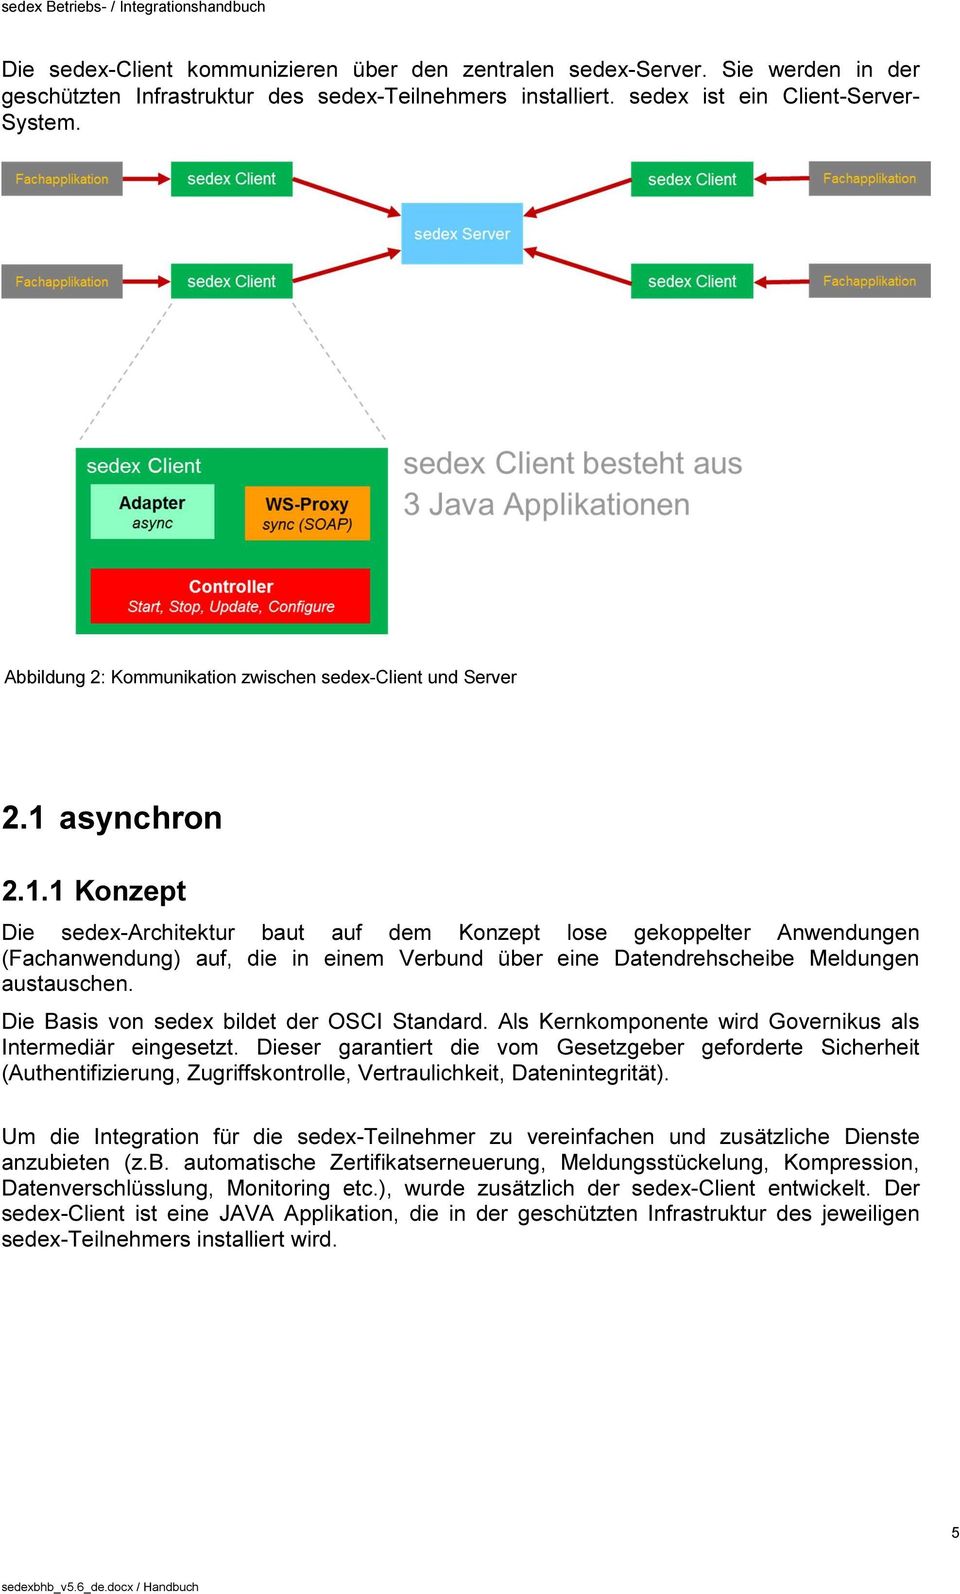 asynchron 2.1.1 Konzept Die sedex-architektur baut auf dem Konzept lose gekoppelter Anwendungen (Fachanwendung) auf, die in einem Verbund über eine Datendrehscheibe Meldungen austauschen.